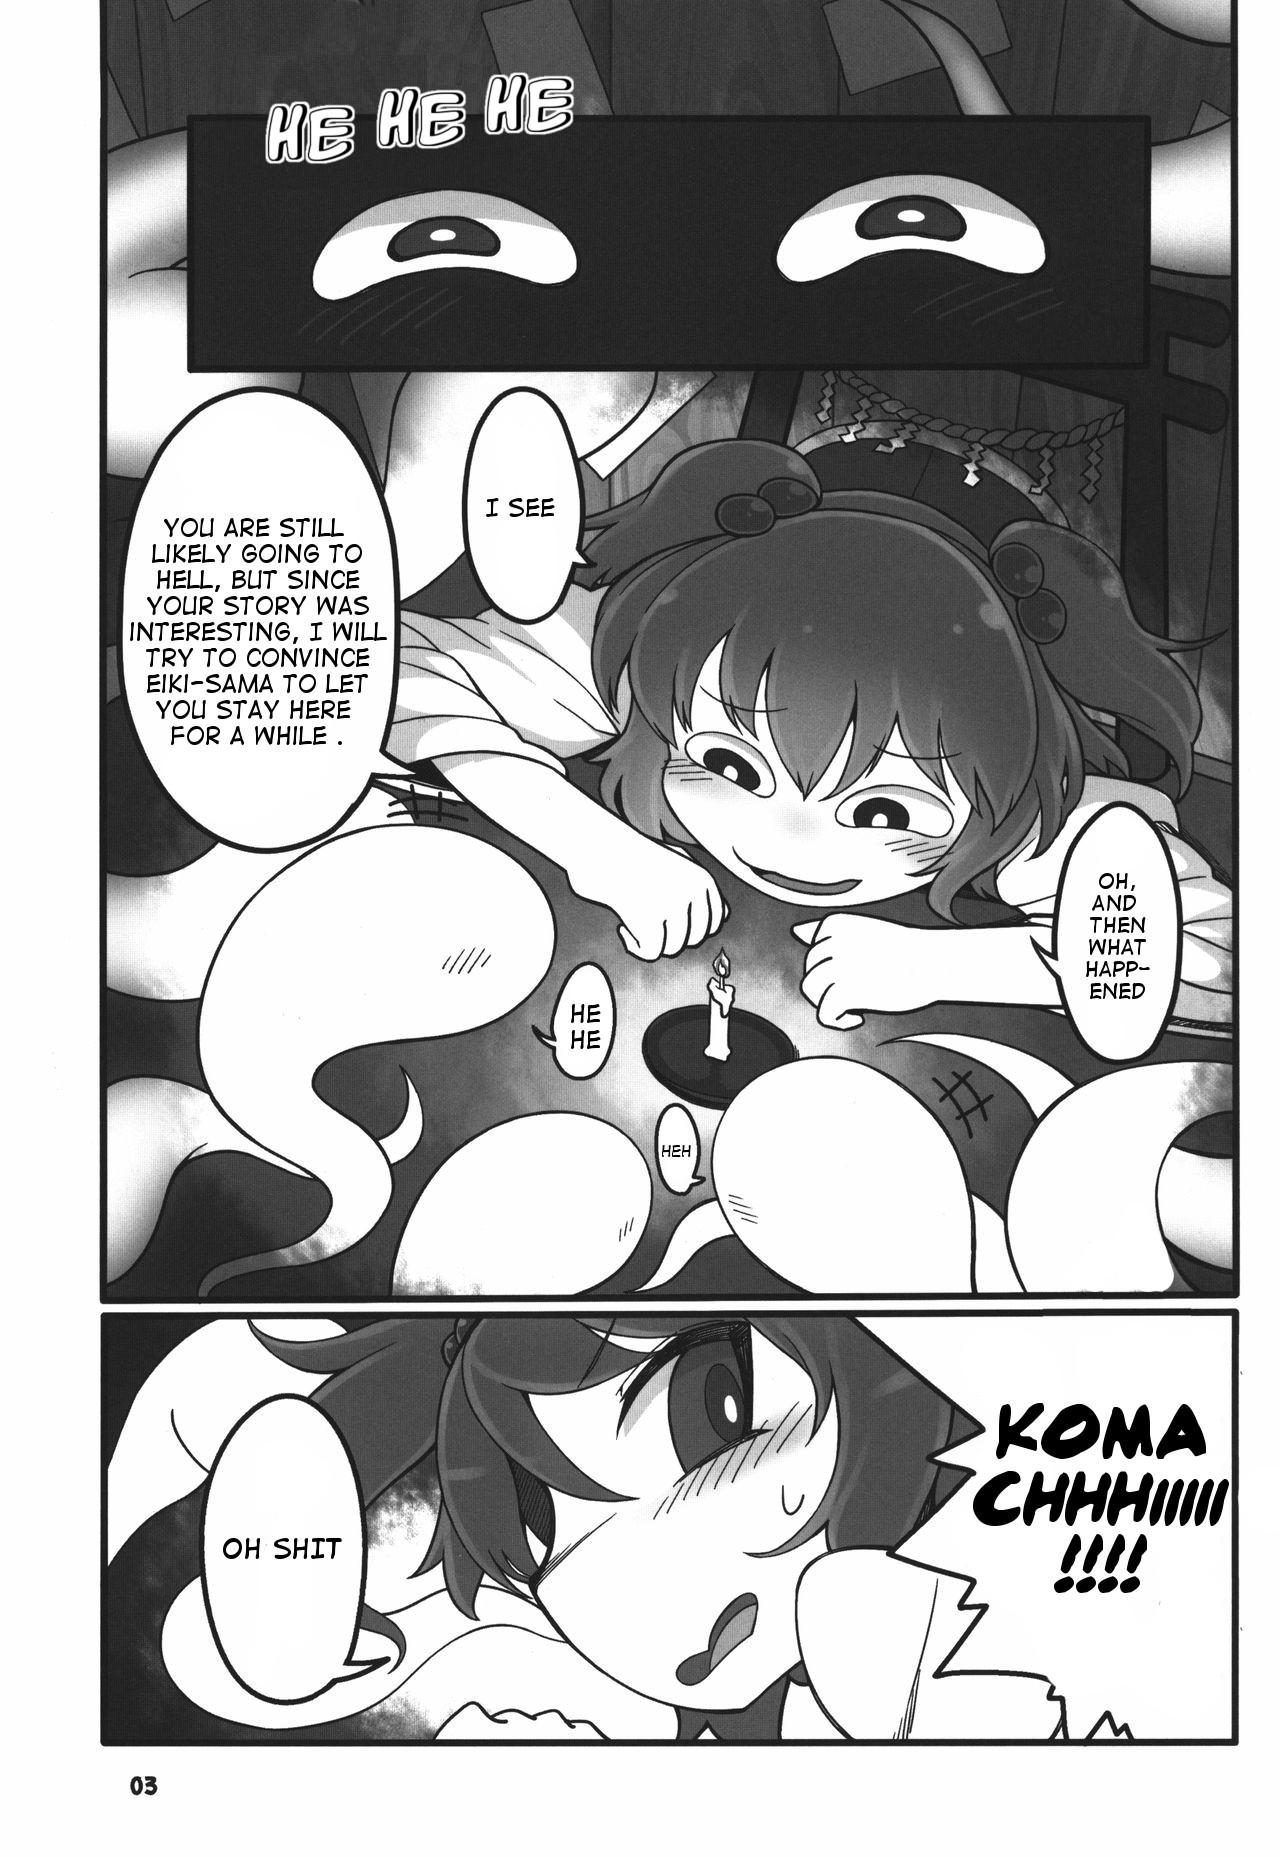 Lesbians Shift Change Eiki-sama - Touhou project Strip - Page 3